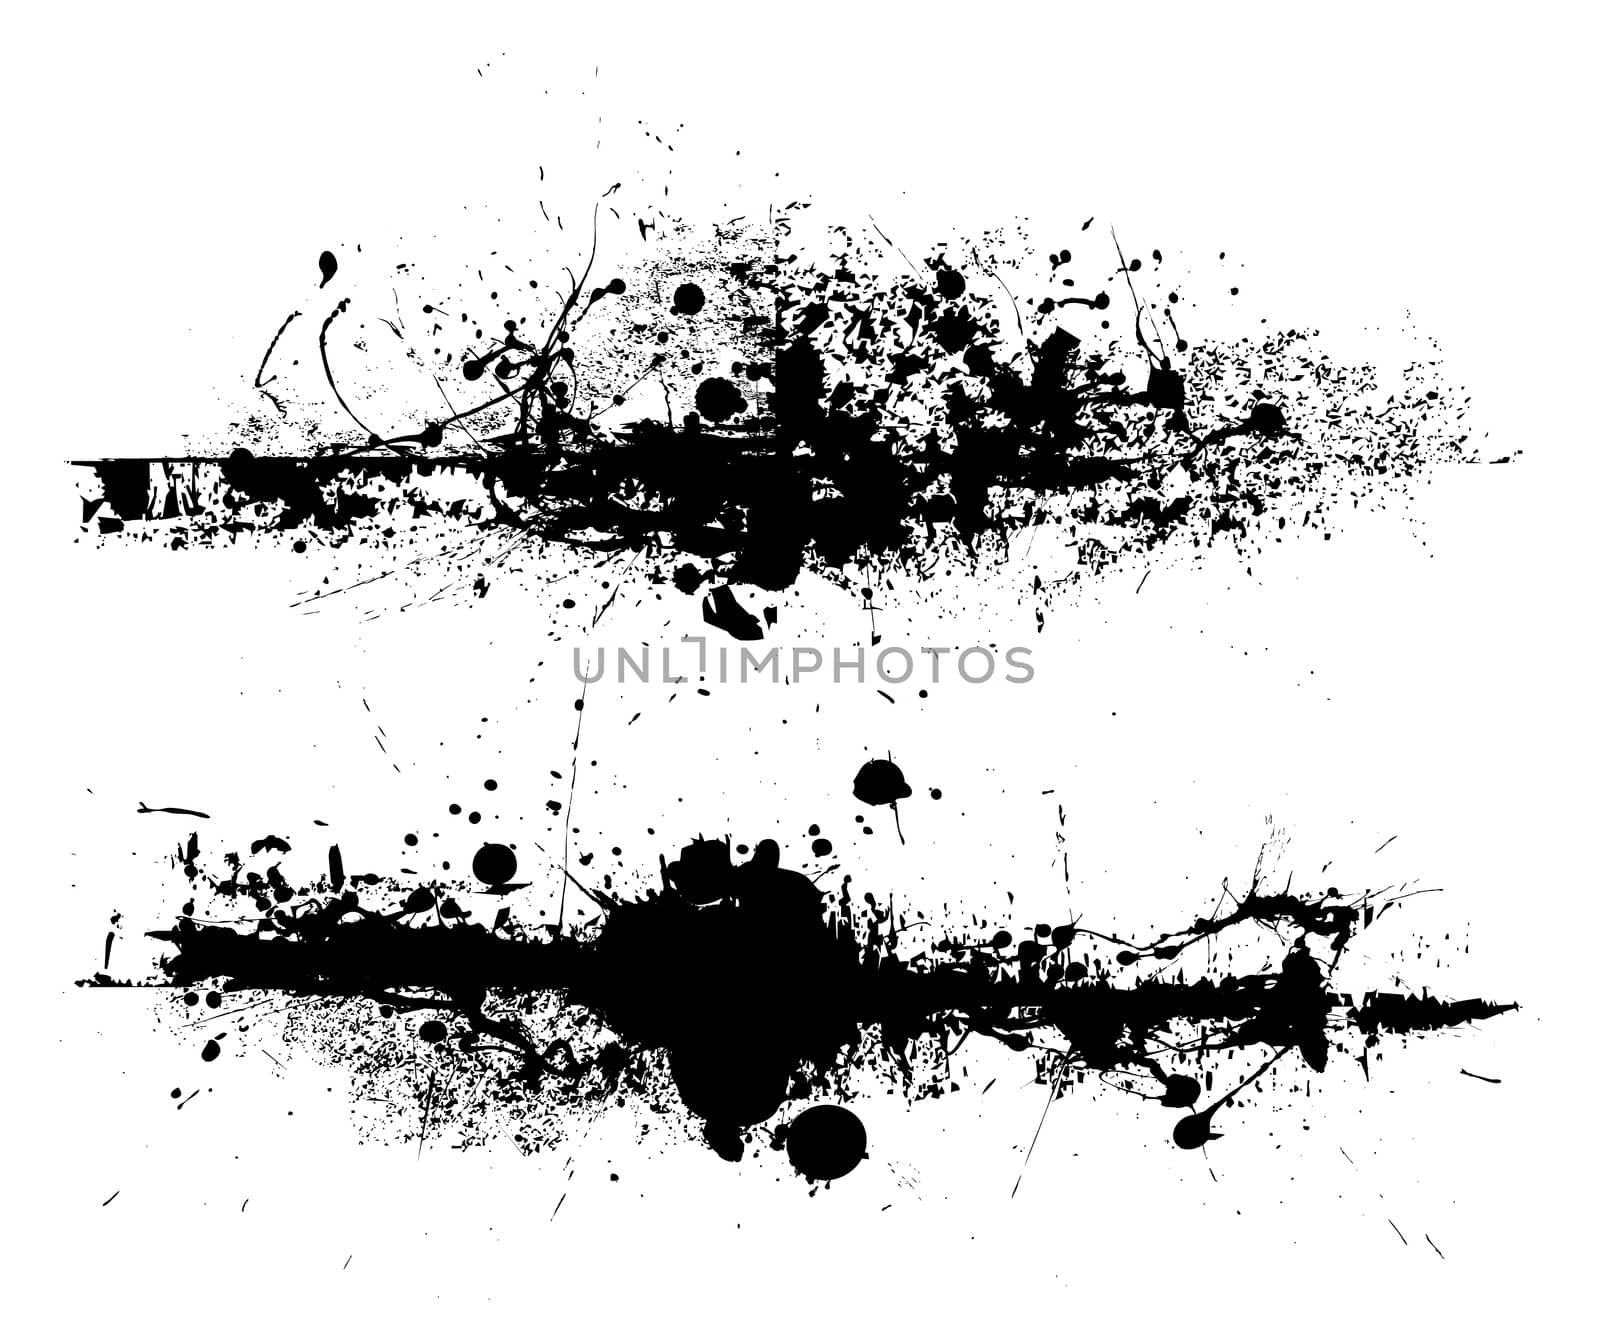 Black ink splat design with roller drag marks and splatter